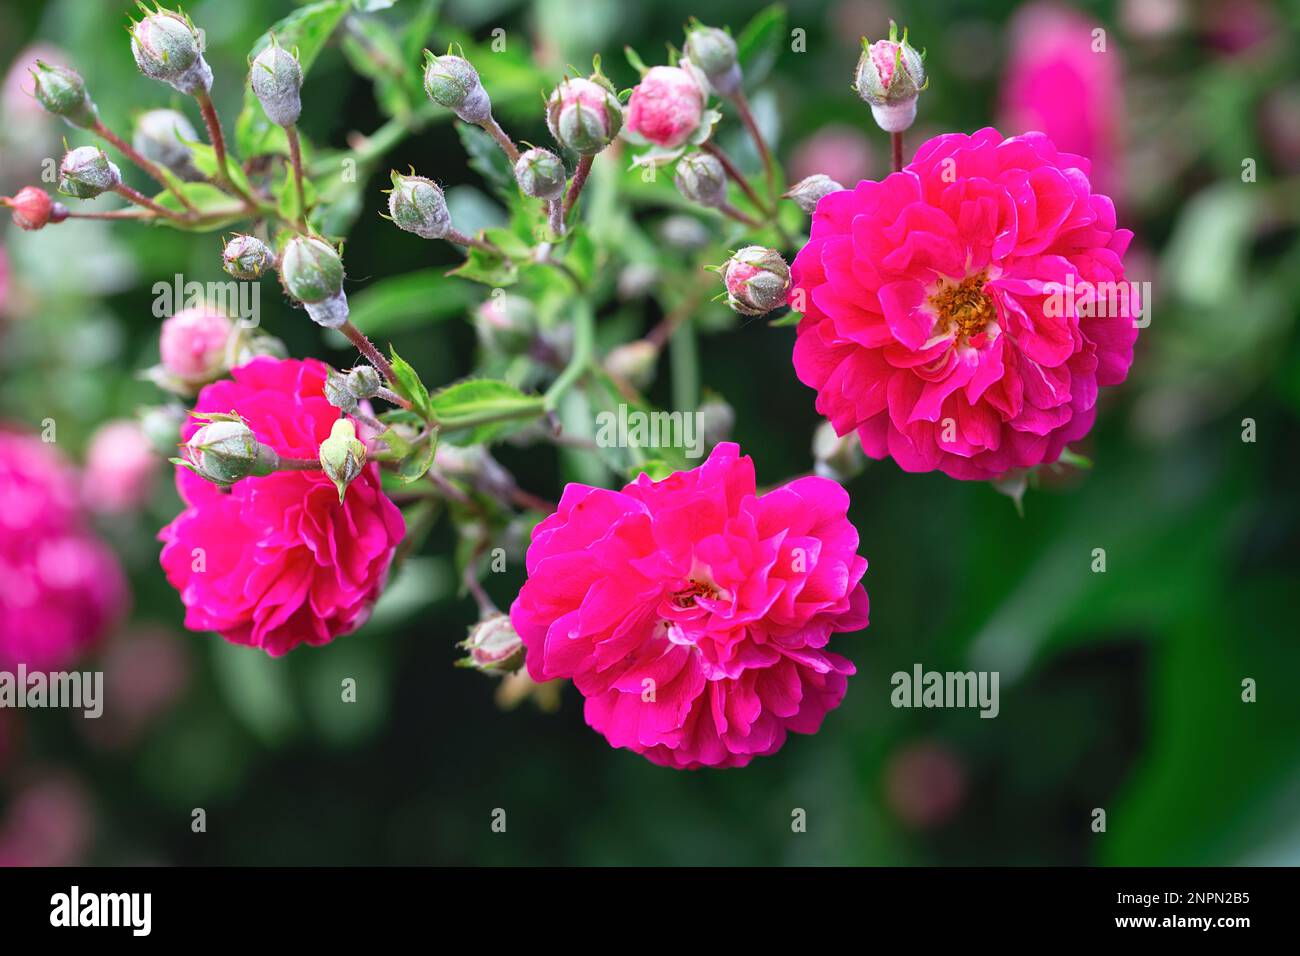 Rosenbusch. Rosa Rosen im Garten. Rote Rosenbüsche im Park. Zarte Blumen. Eine Hecke aus Rosenbüschen. Natürlicher Blumenhintergrund. Stockfoto